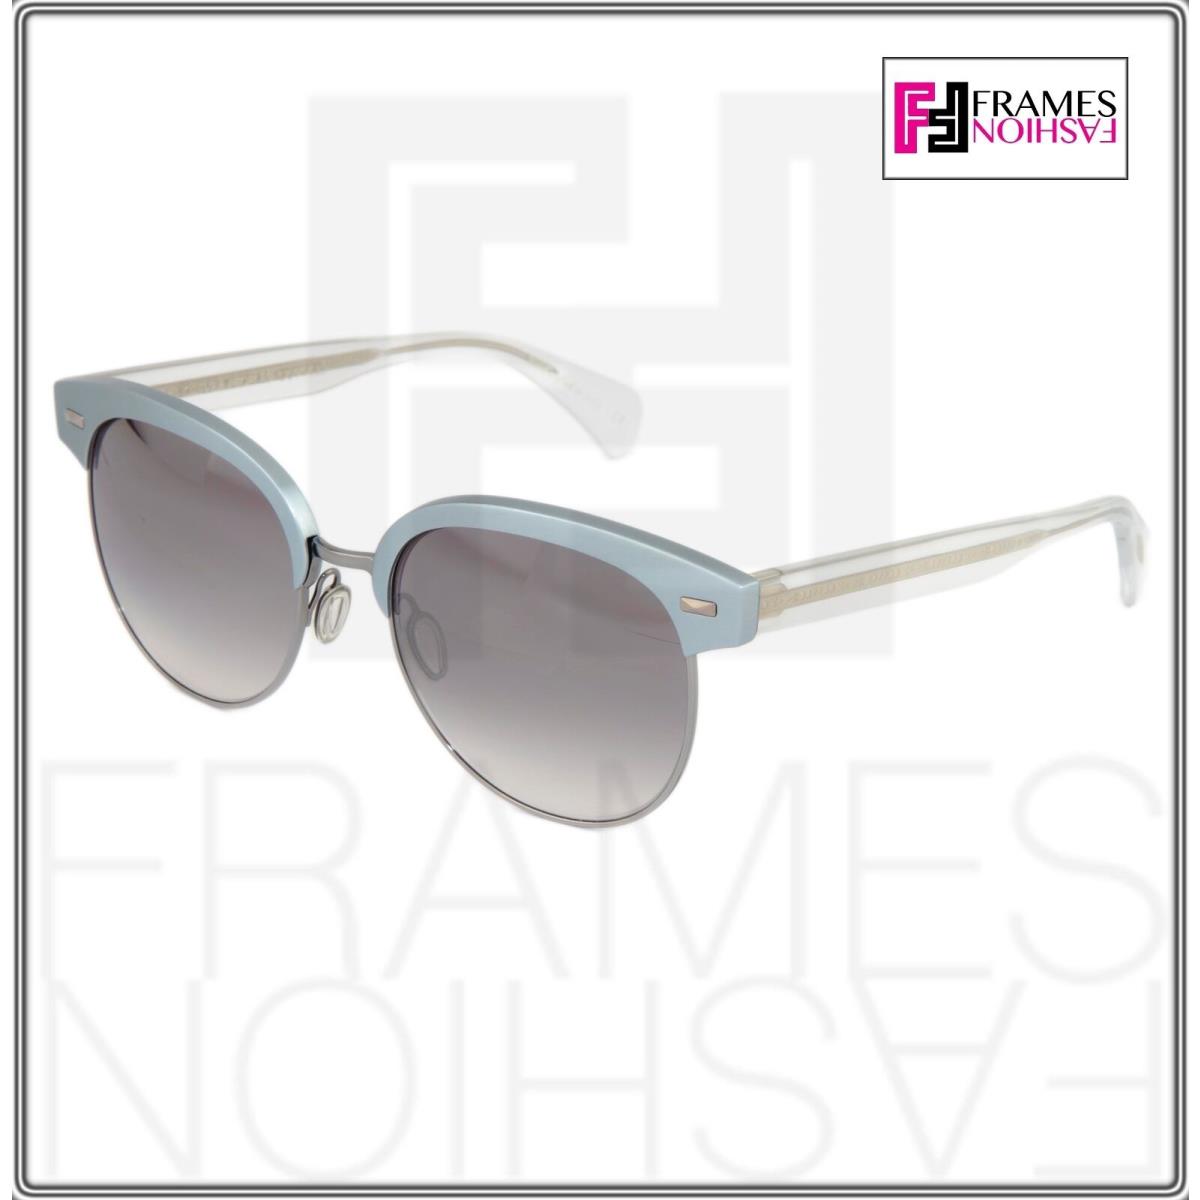 Oliver Peoples sunglasses  - Crystal frost Gunmetal Frame, Grey Lens 6